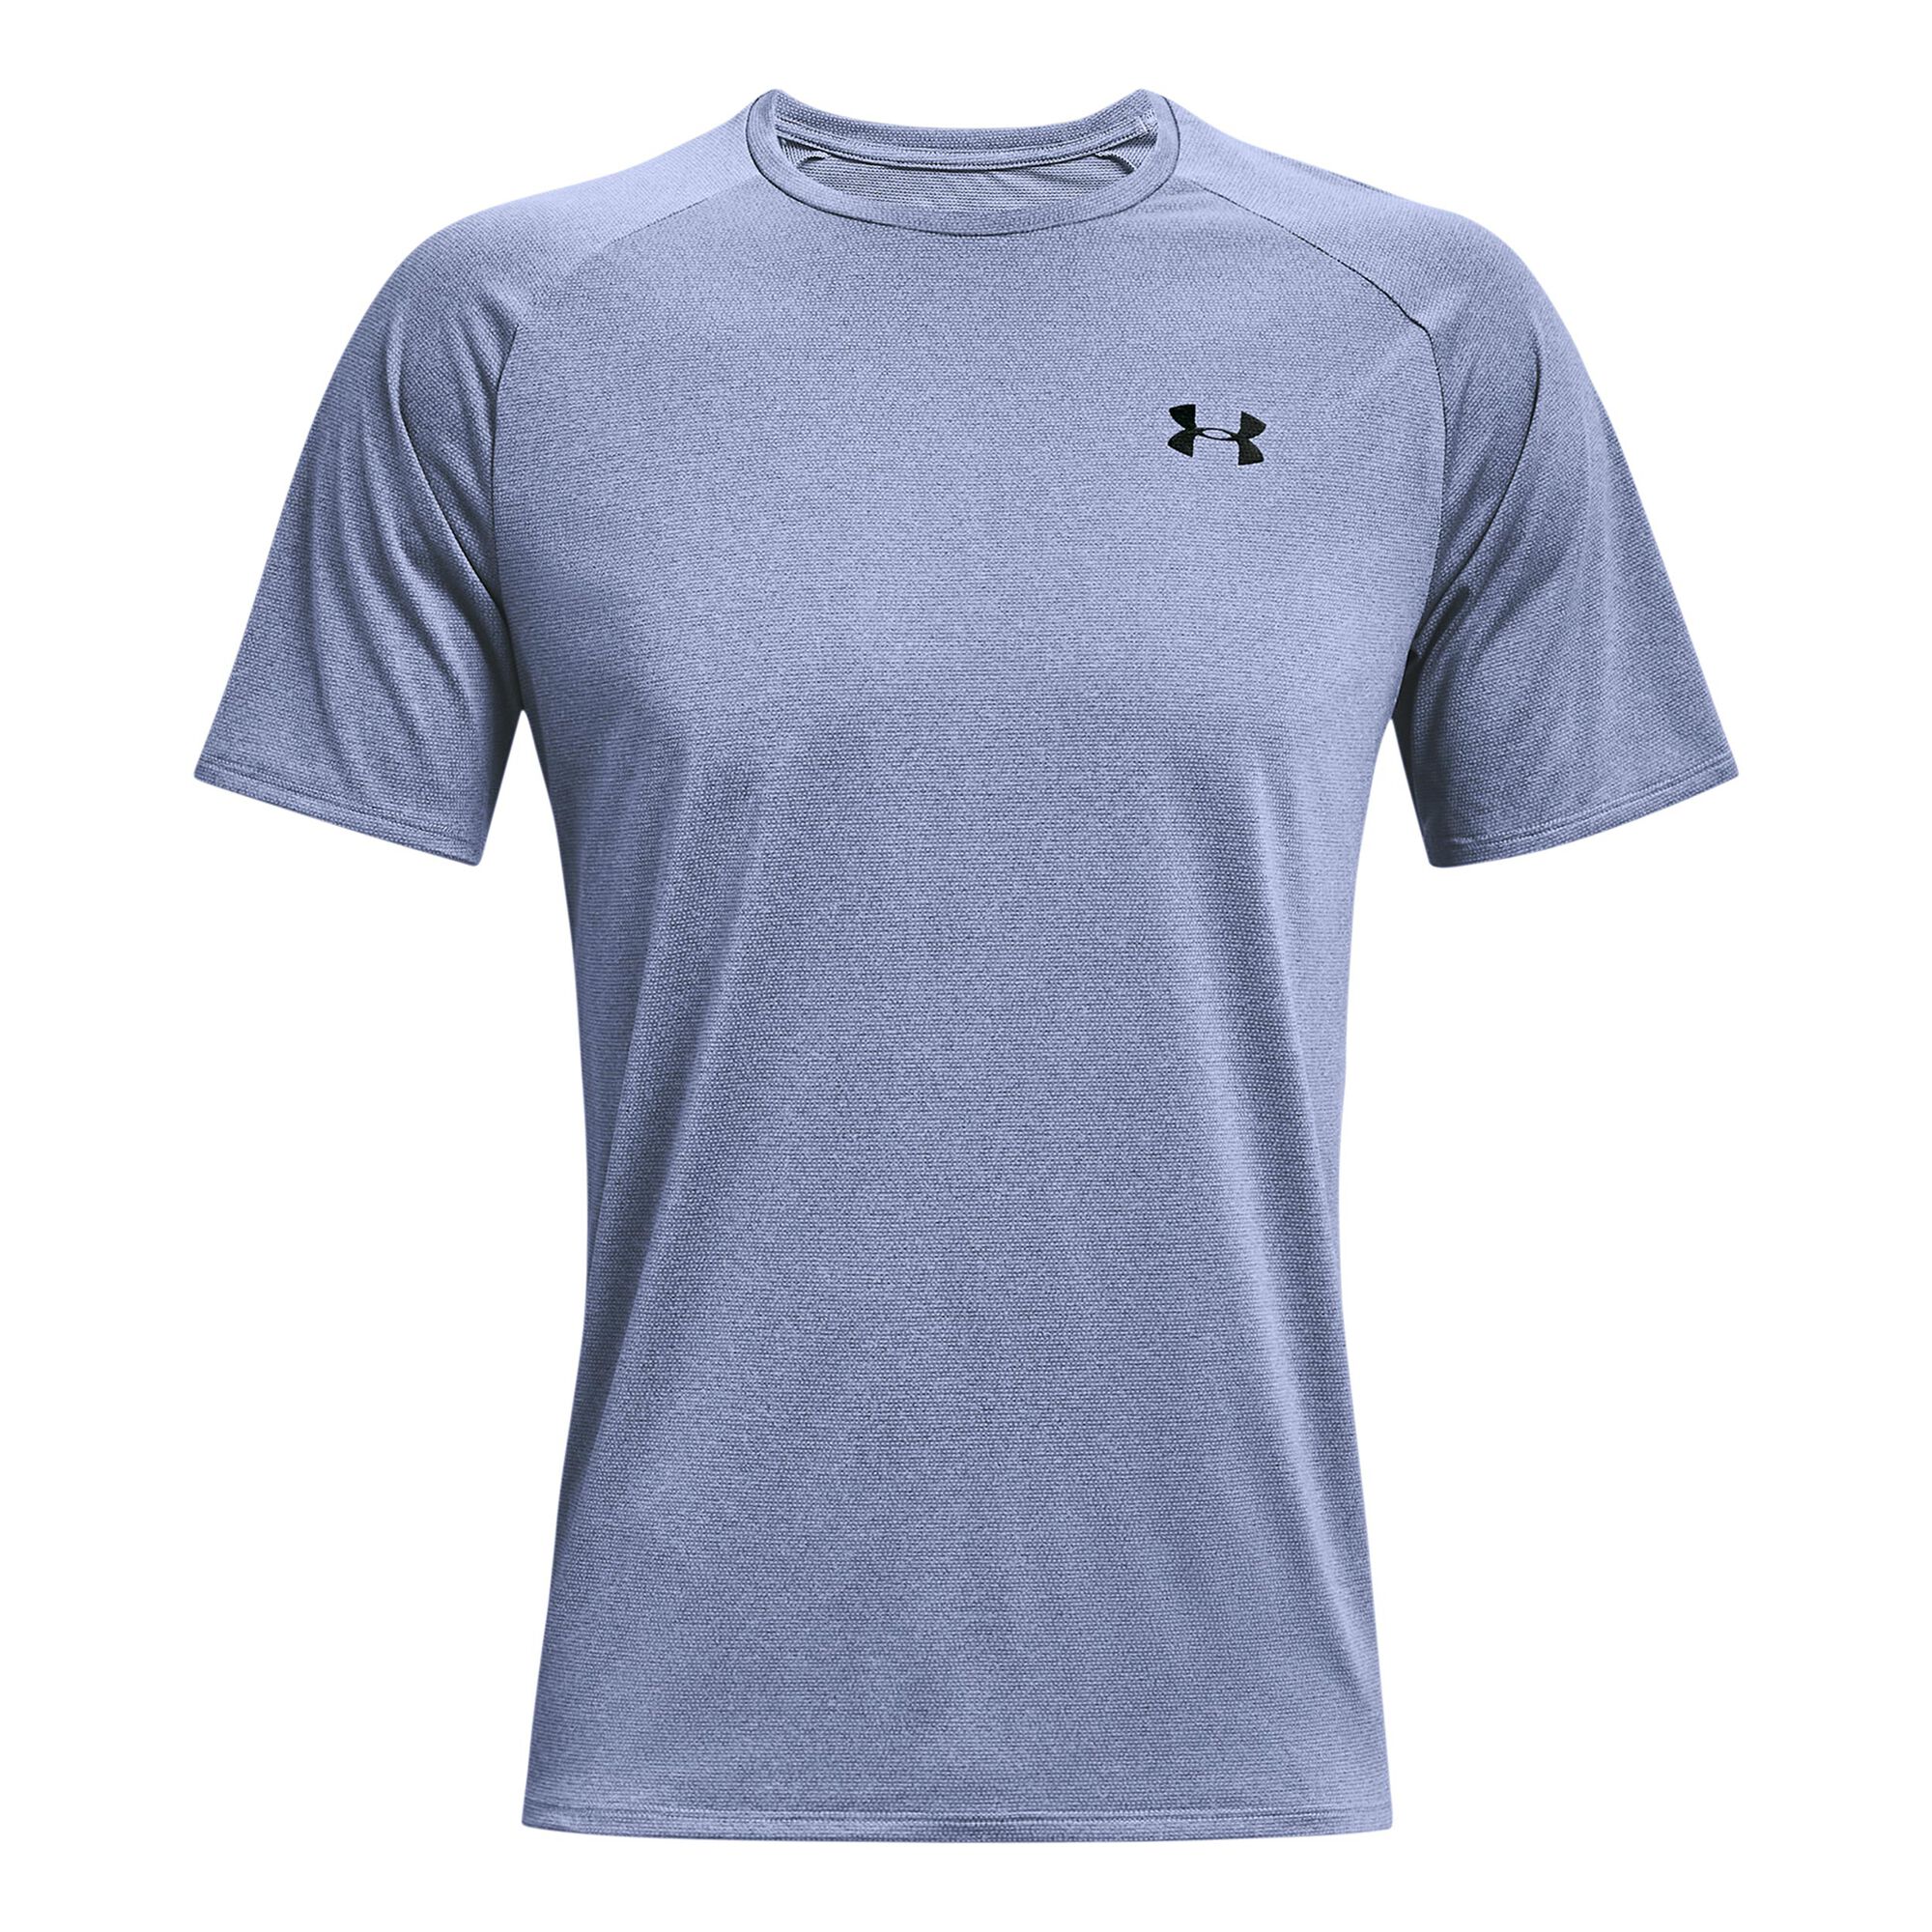 buy Under Armour Tech 2.0 Novelty T-Shirt Men - Blue online | Tennis-Point